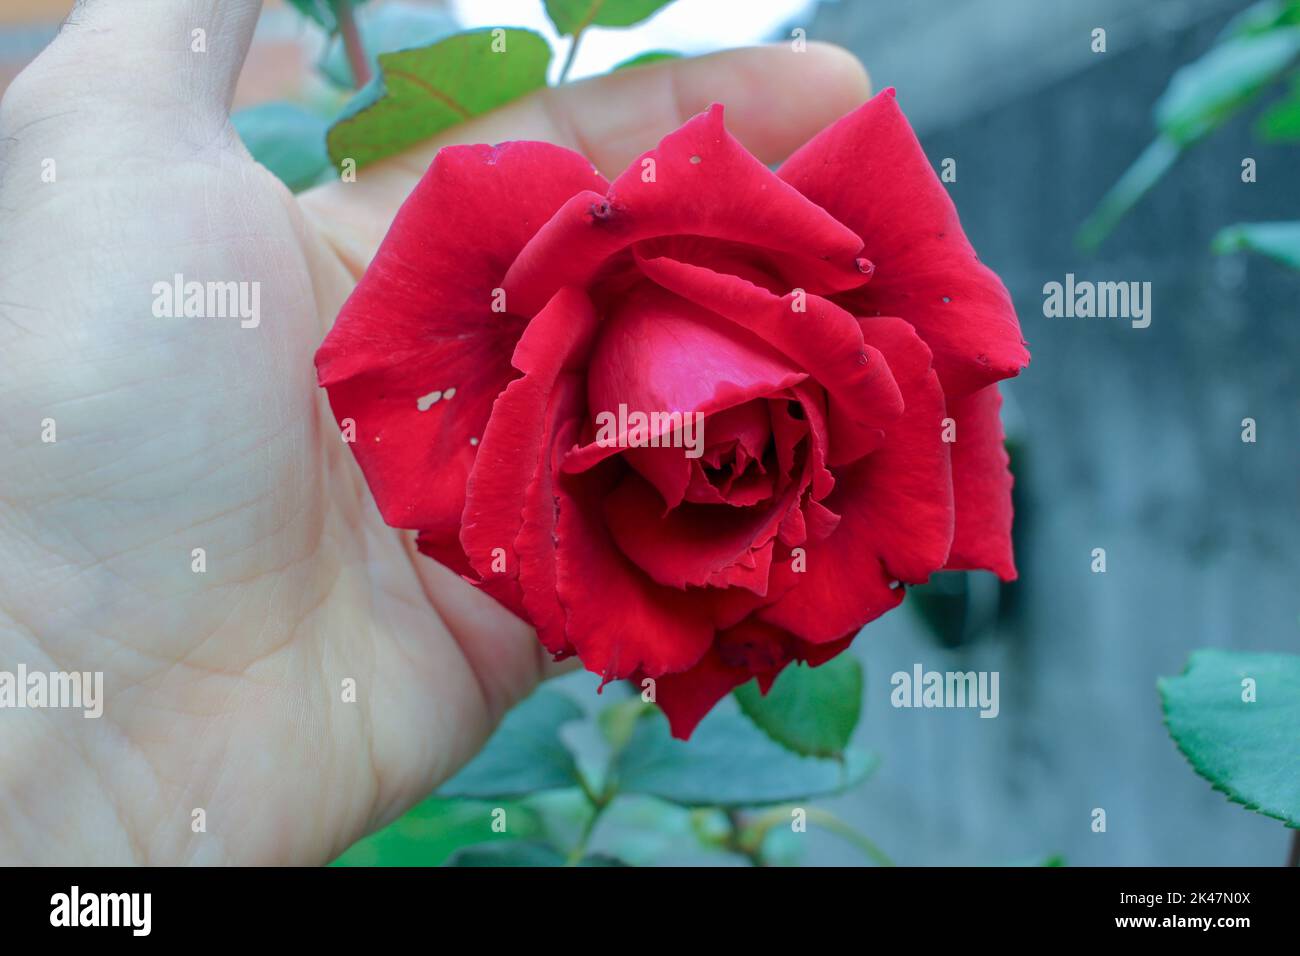 Das Vergnügen, eine rote Rose zu halten und zu riechen Stockfoto